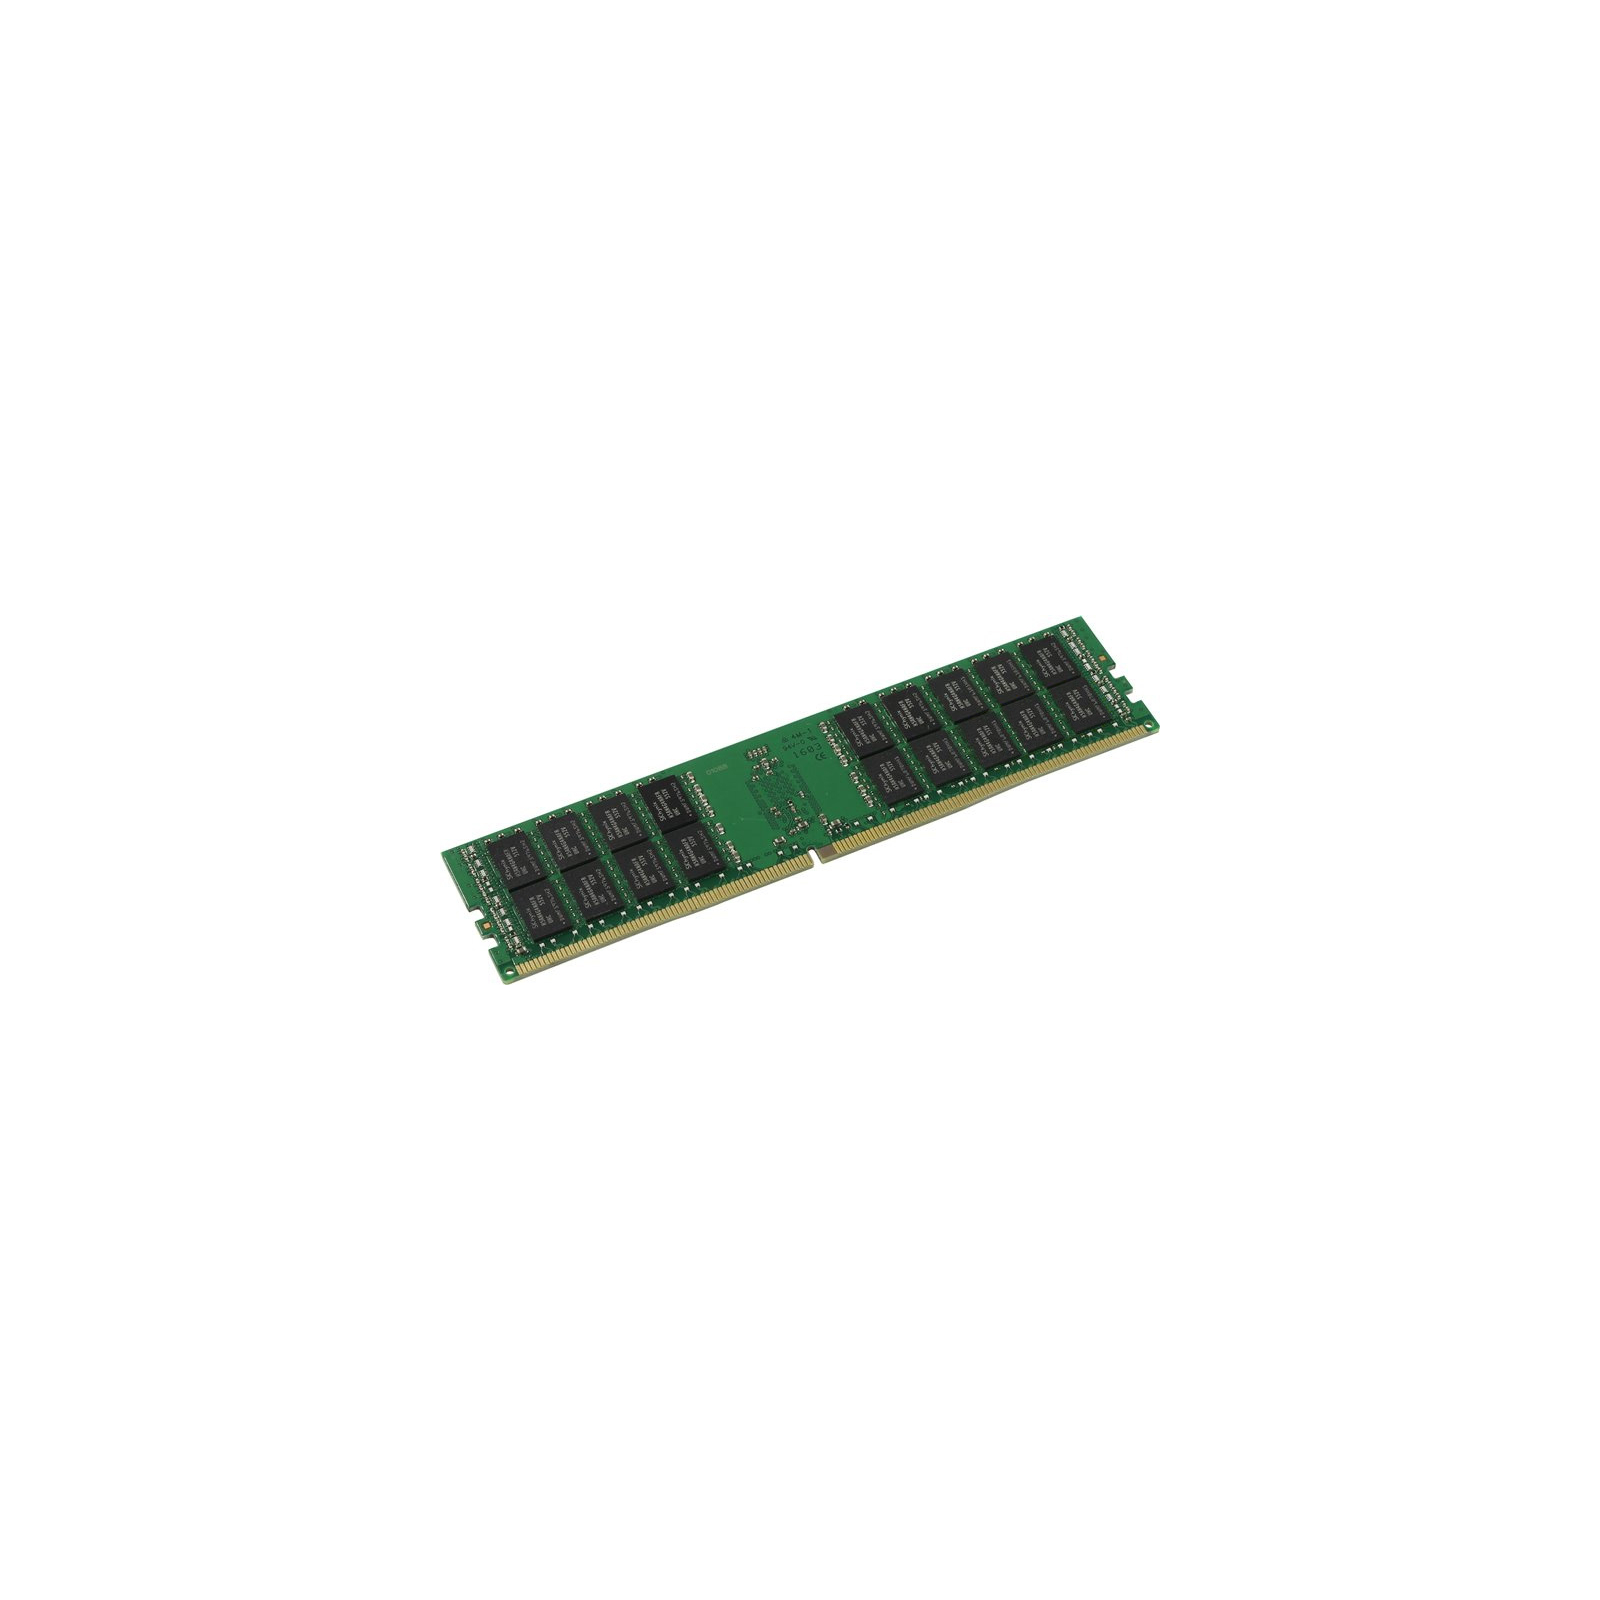 Модуль памяти для сервера DDR4 16GB ECC RDIMM 2400MHz 2Rx4 1.2V CL17 Kingston (KVR24R17D4/16)